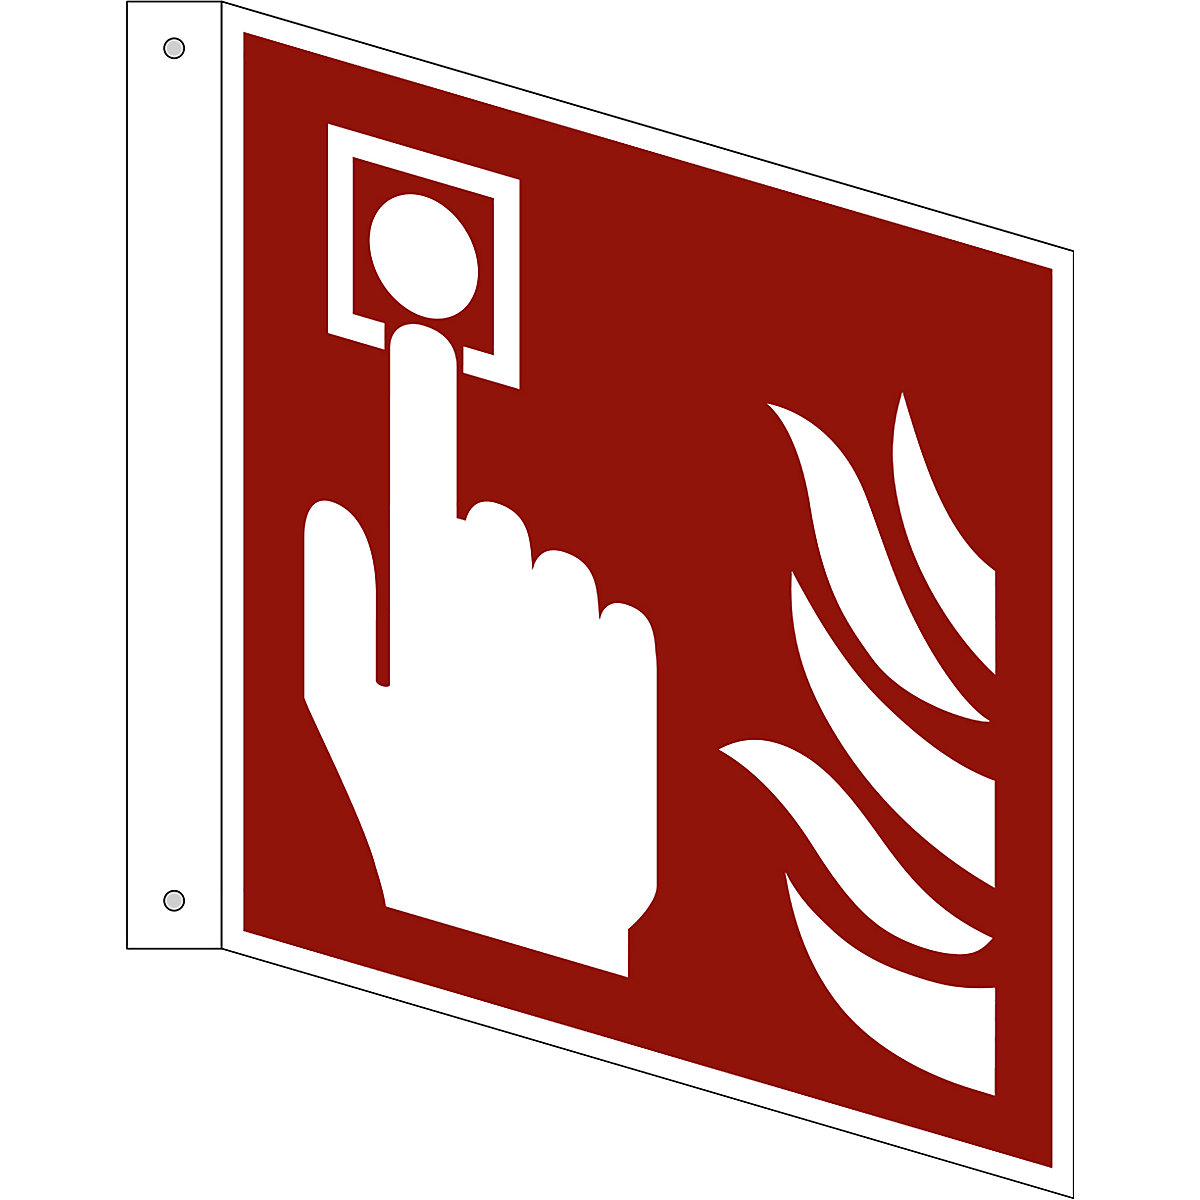 Značka pro ochranu proti požáru, požární hlásič, bal.j. 10 ks, plast, vlajkový štítek, 200 x 200 mm